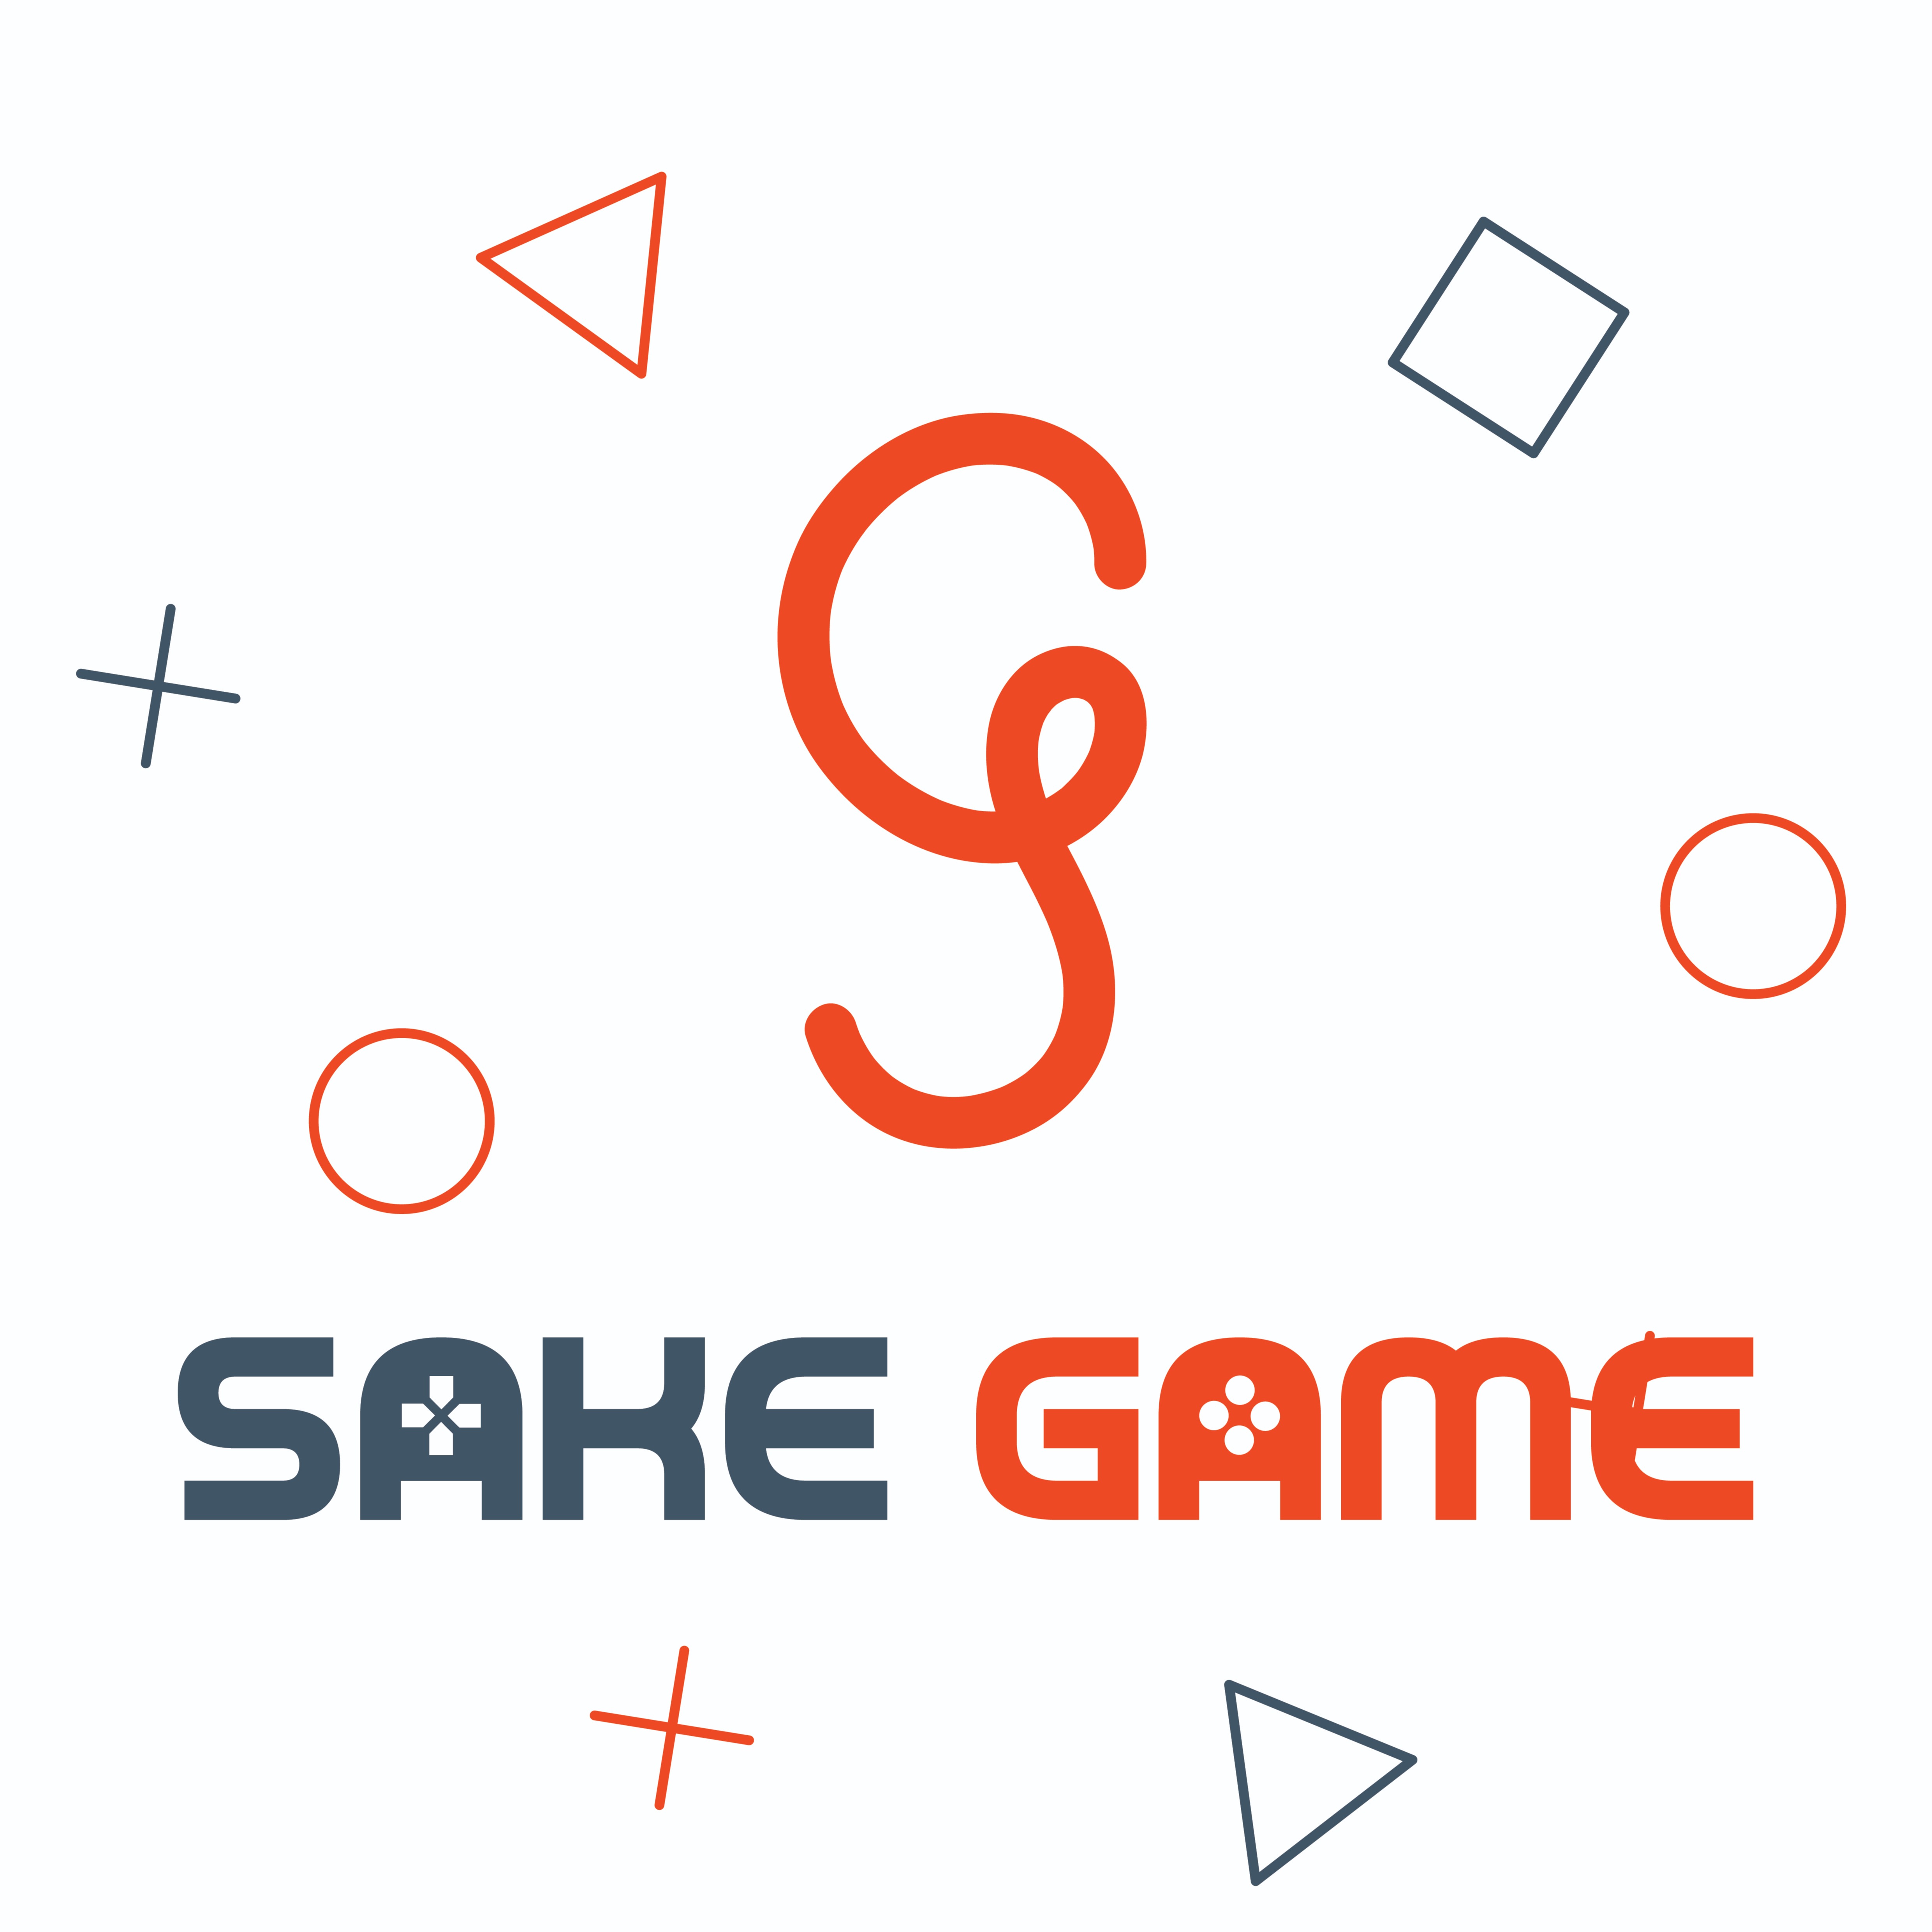 SakeGame